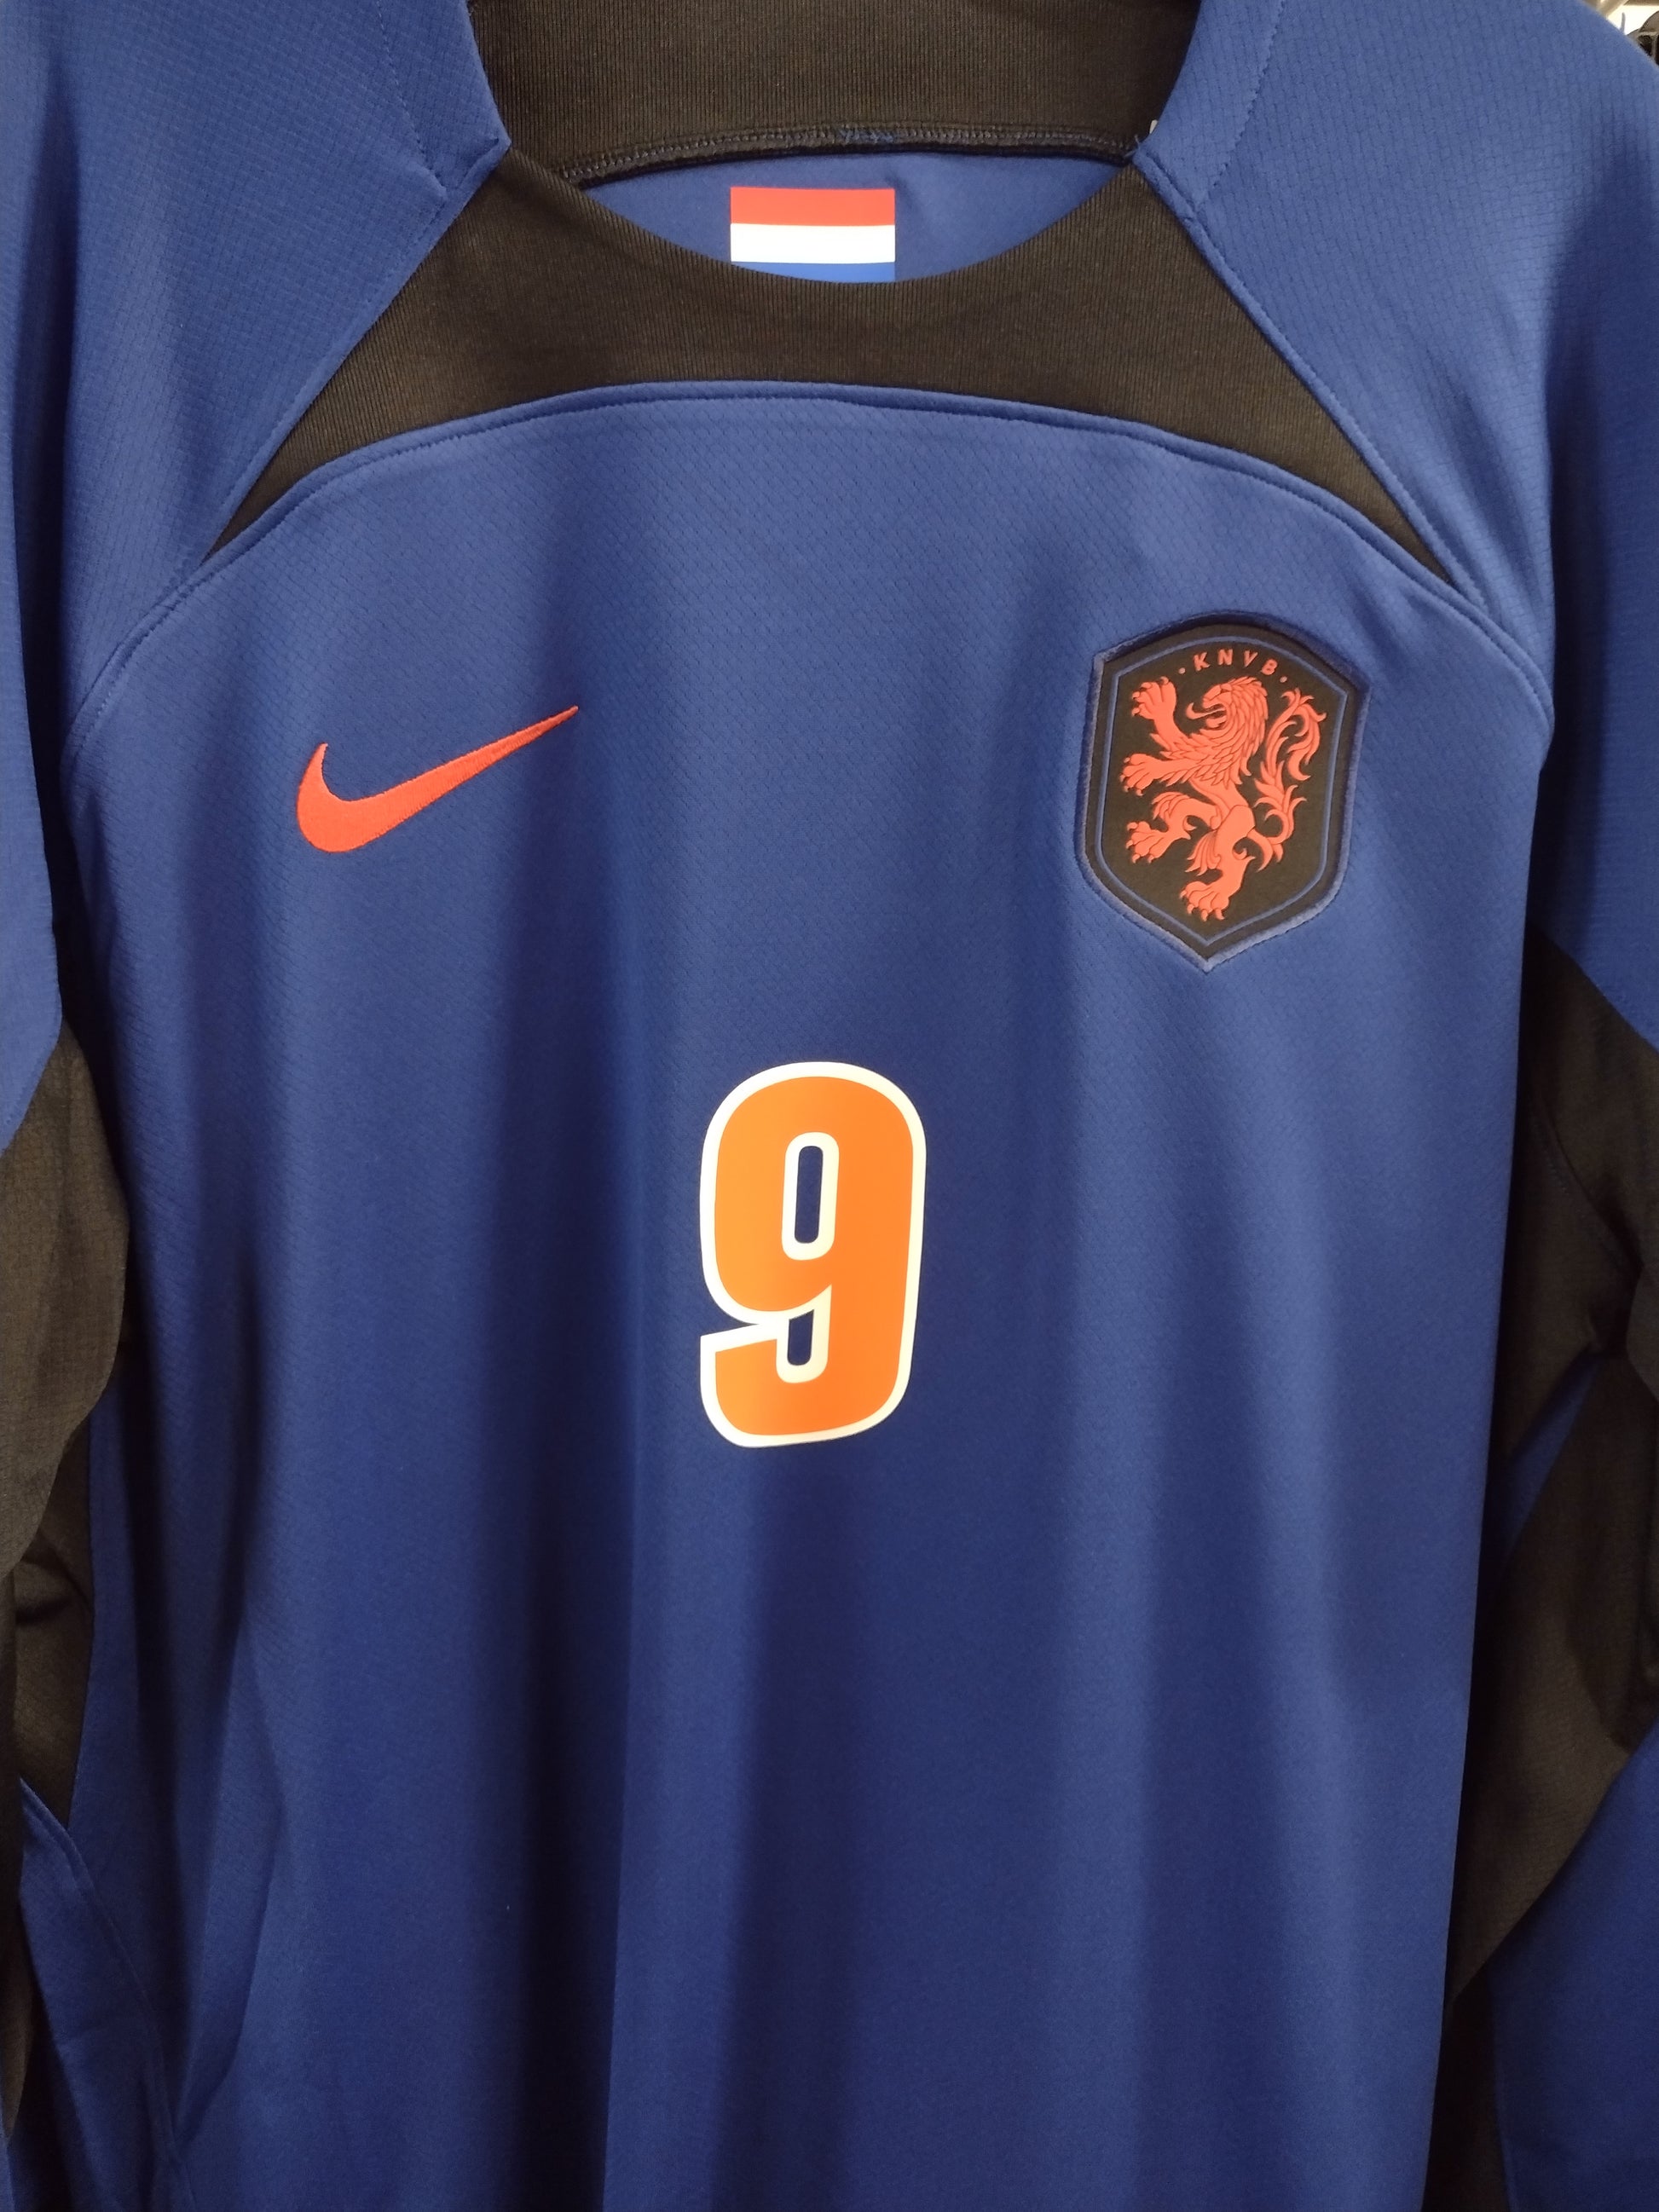 Netherlands KNVB' Men's Longsleeve Shirt